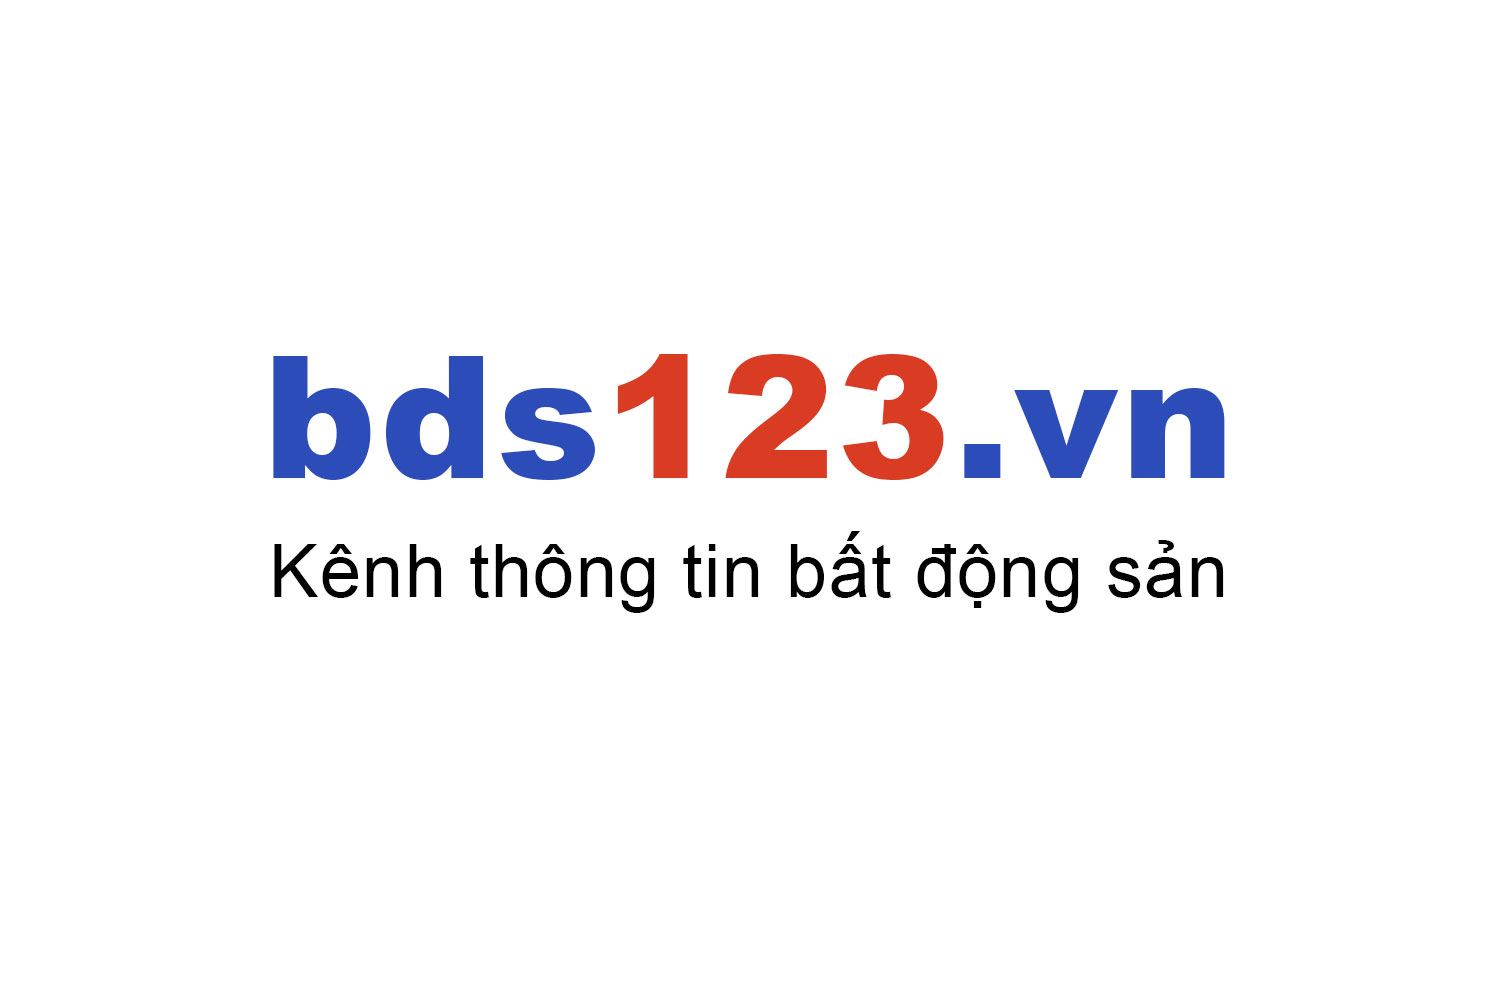 Mua bán chung cư Chung cư 120 Hoàng Quốc Việt ưu đãi giá tốt T10/2022 - Bds123.vn